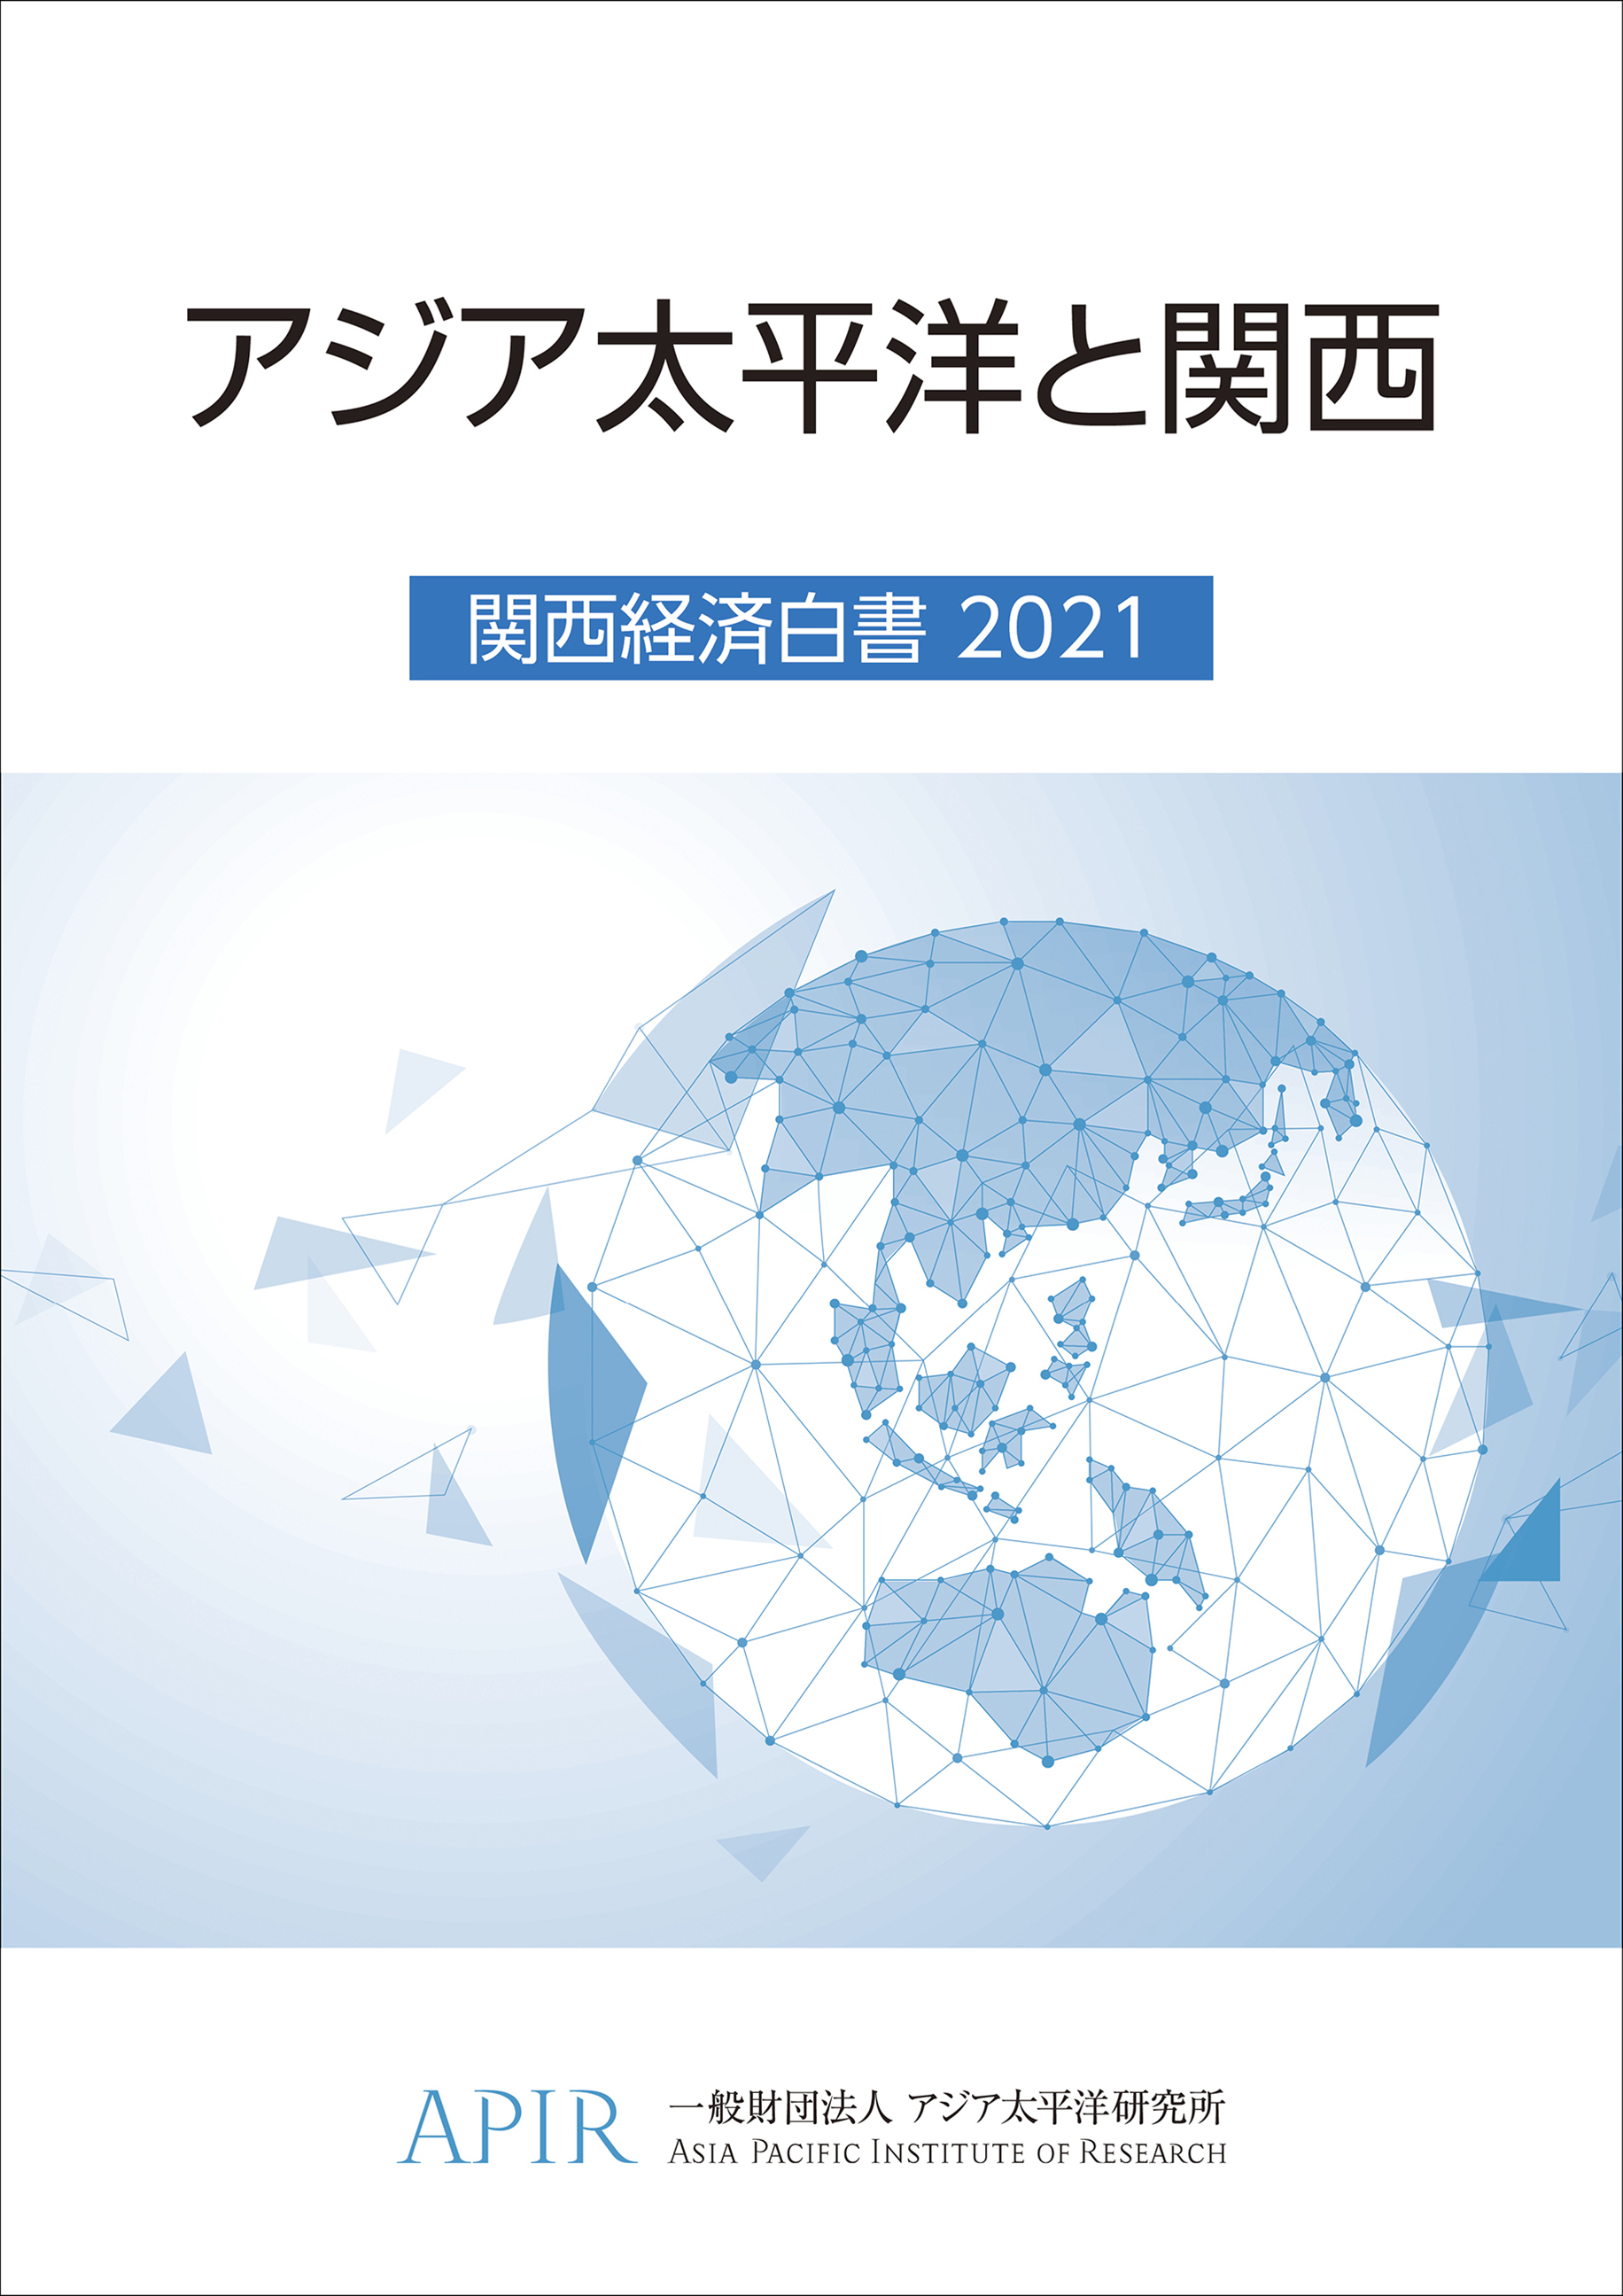 アジア太平洋と関西 関西経済白書2021